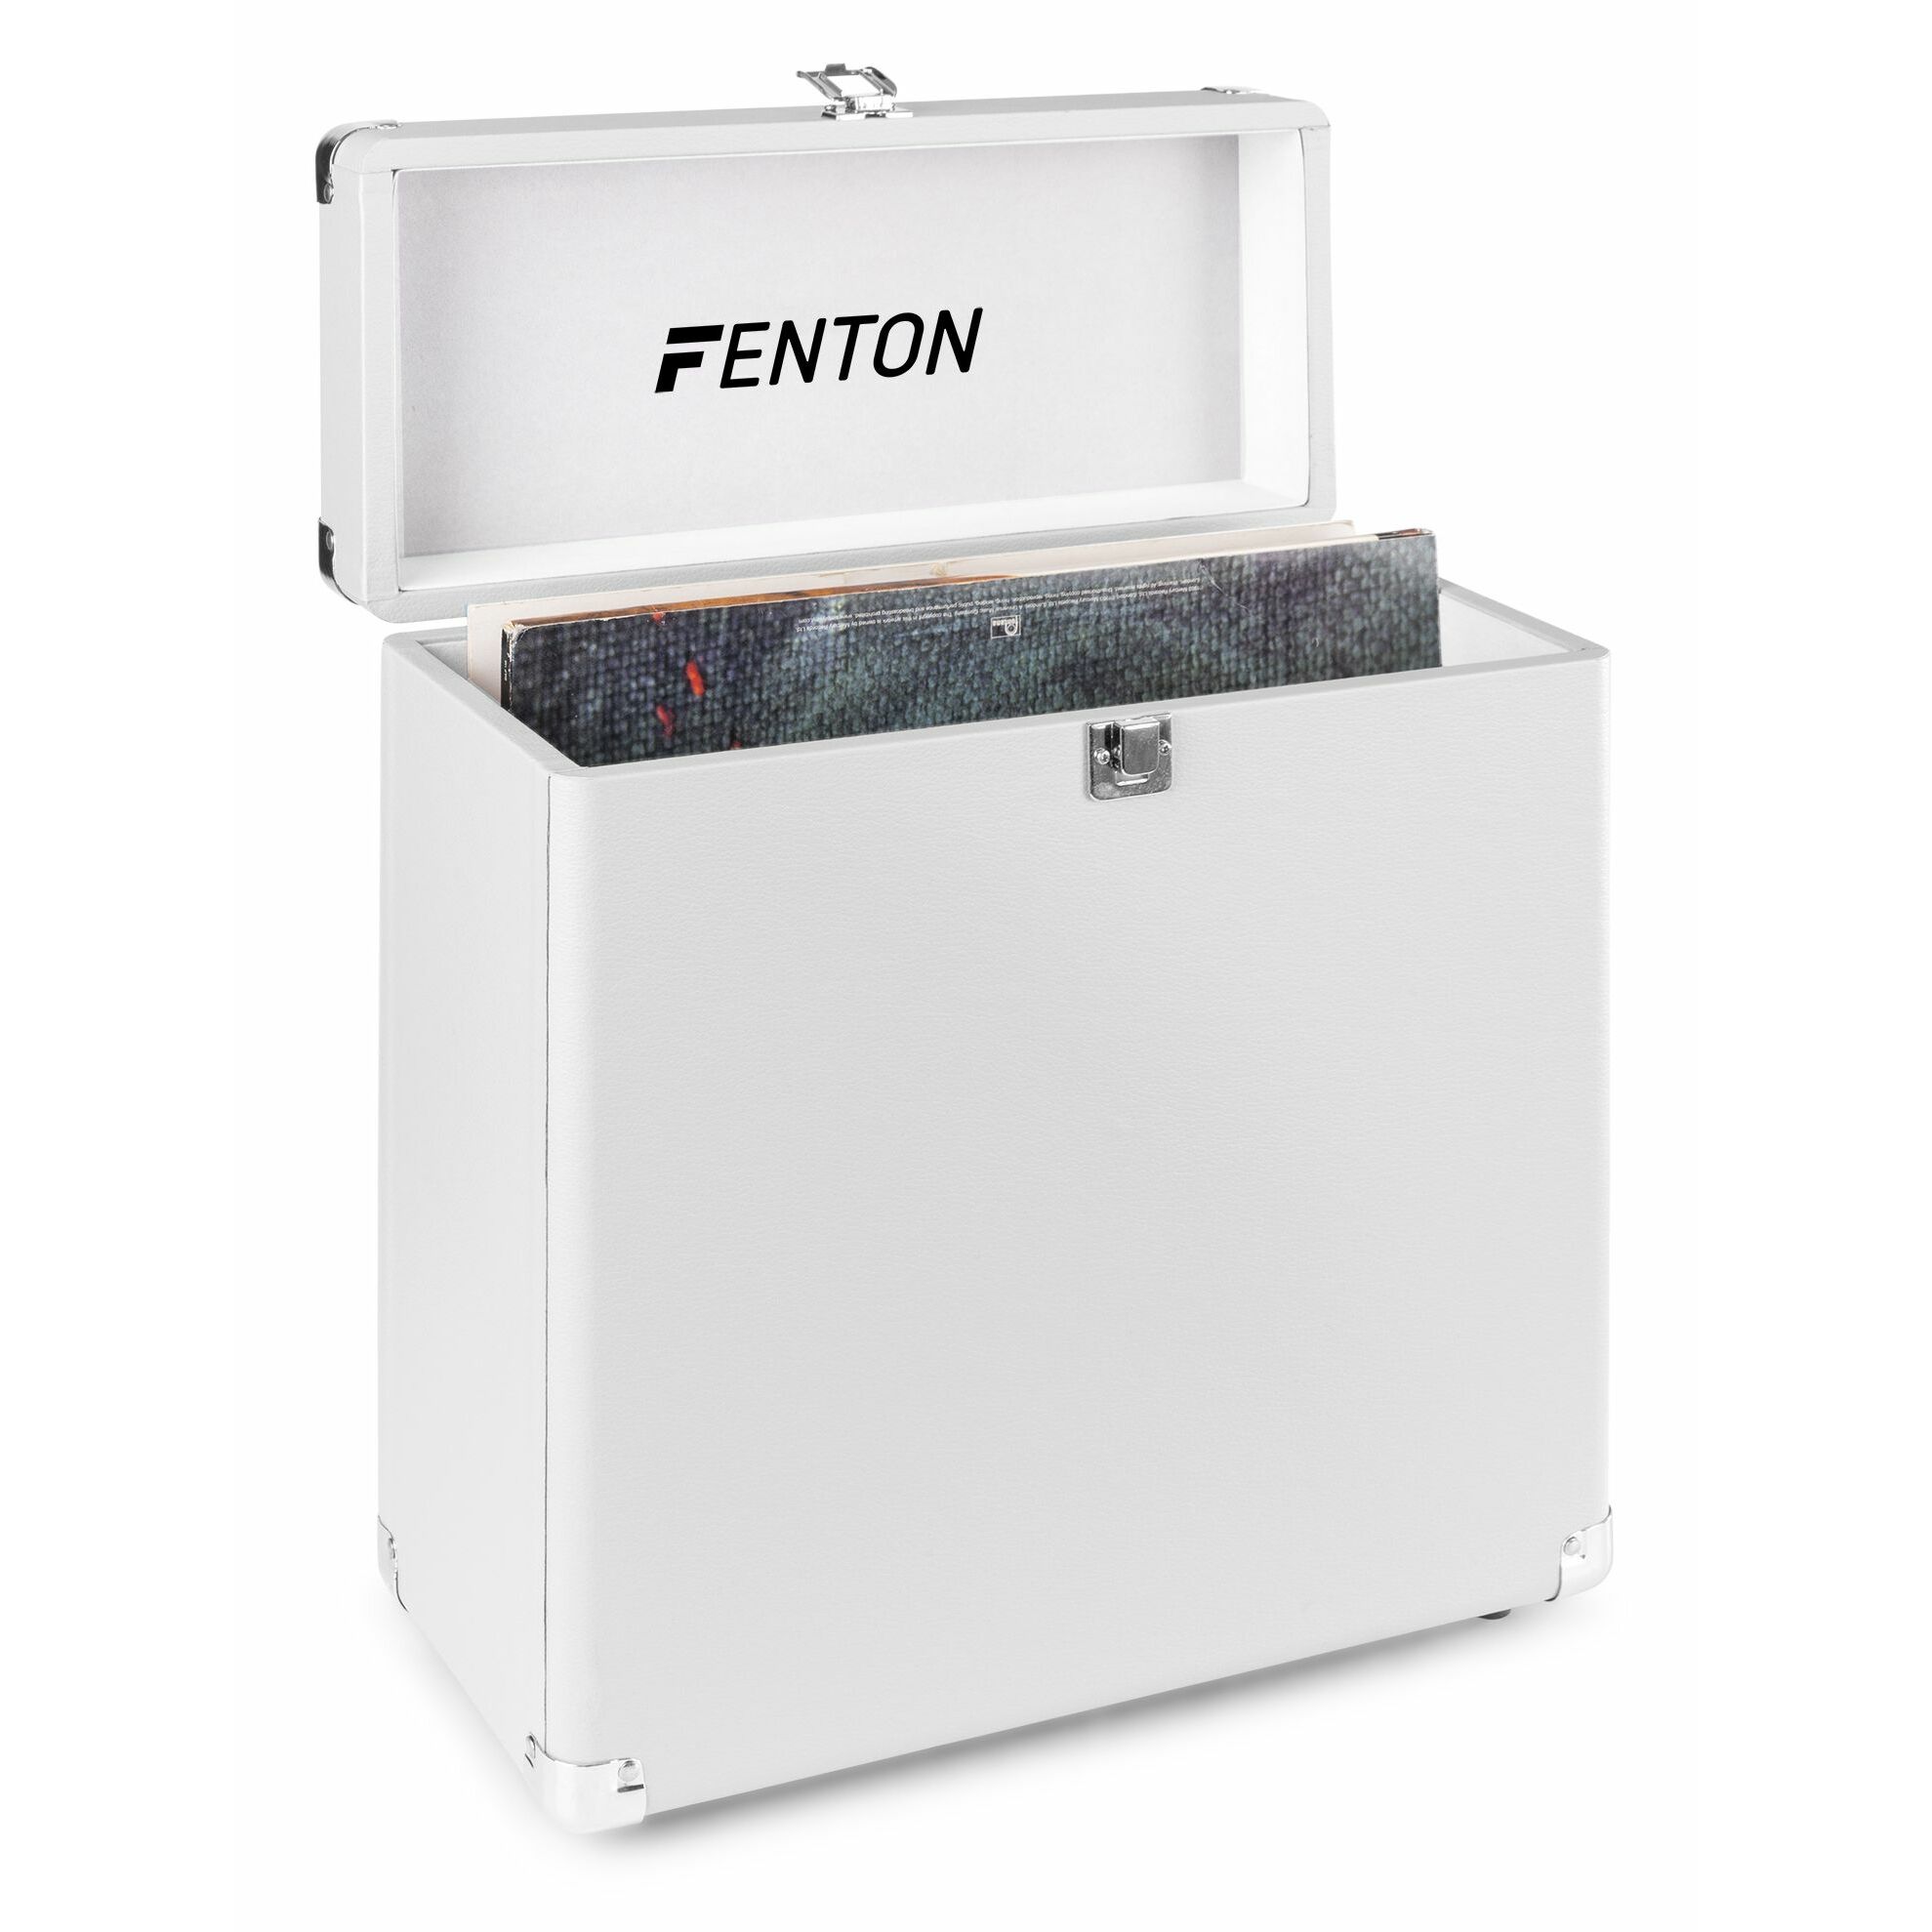 Retourdeal - Fenton RC30 platenkoffer voor ruim 30 platen - Wit